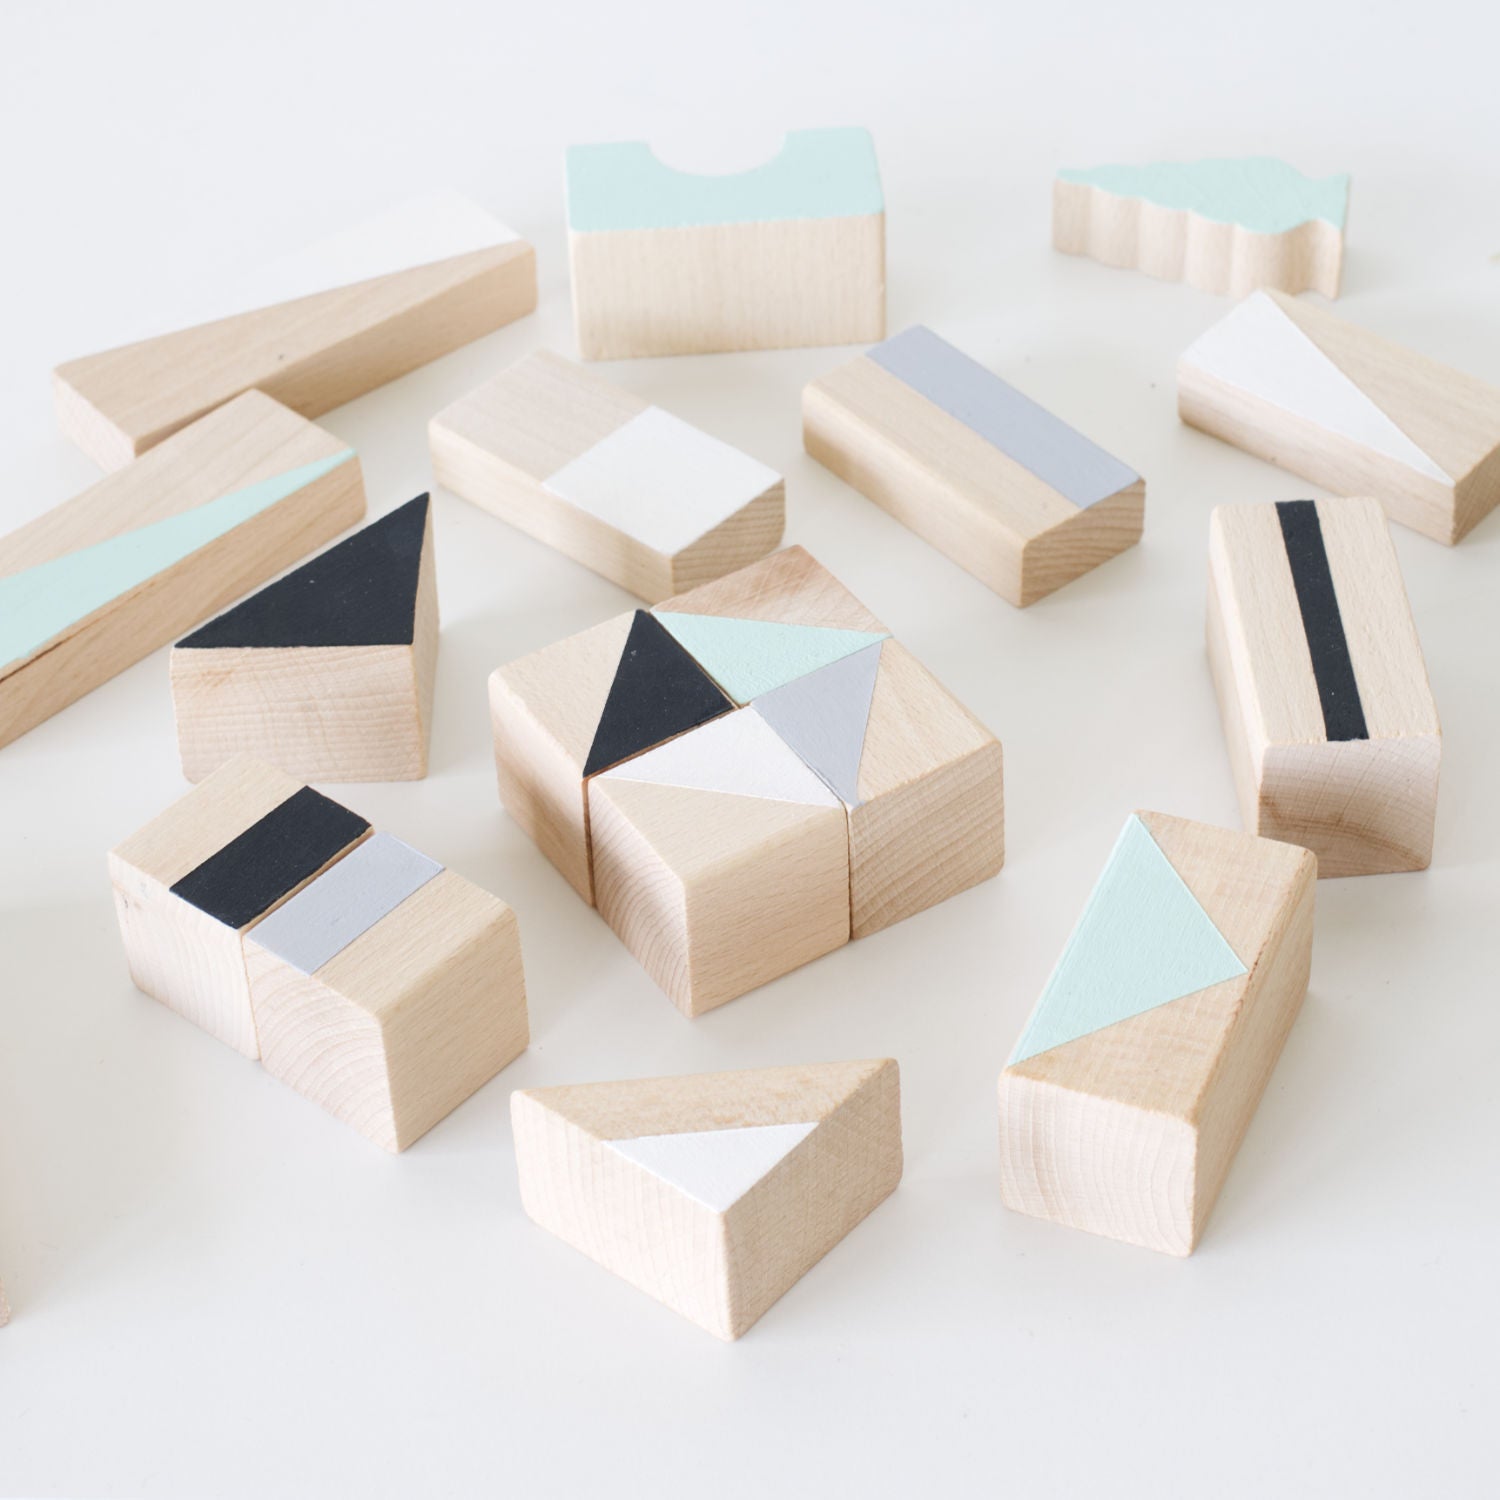 Wooden building blocks - Mint & monochrome - Happy Little Folks